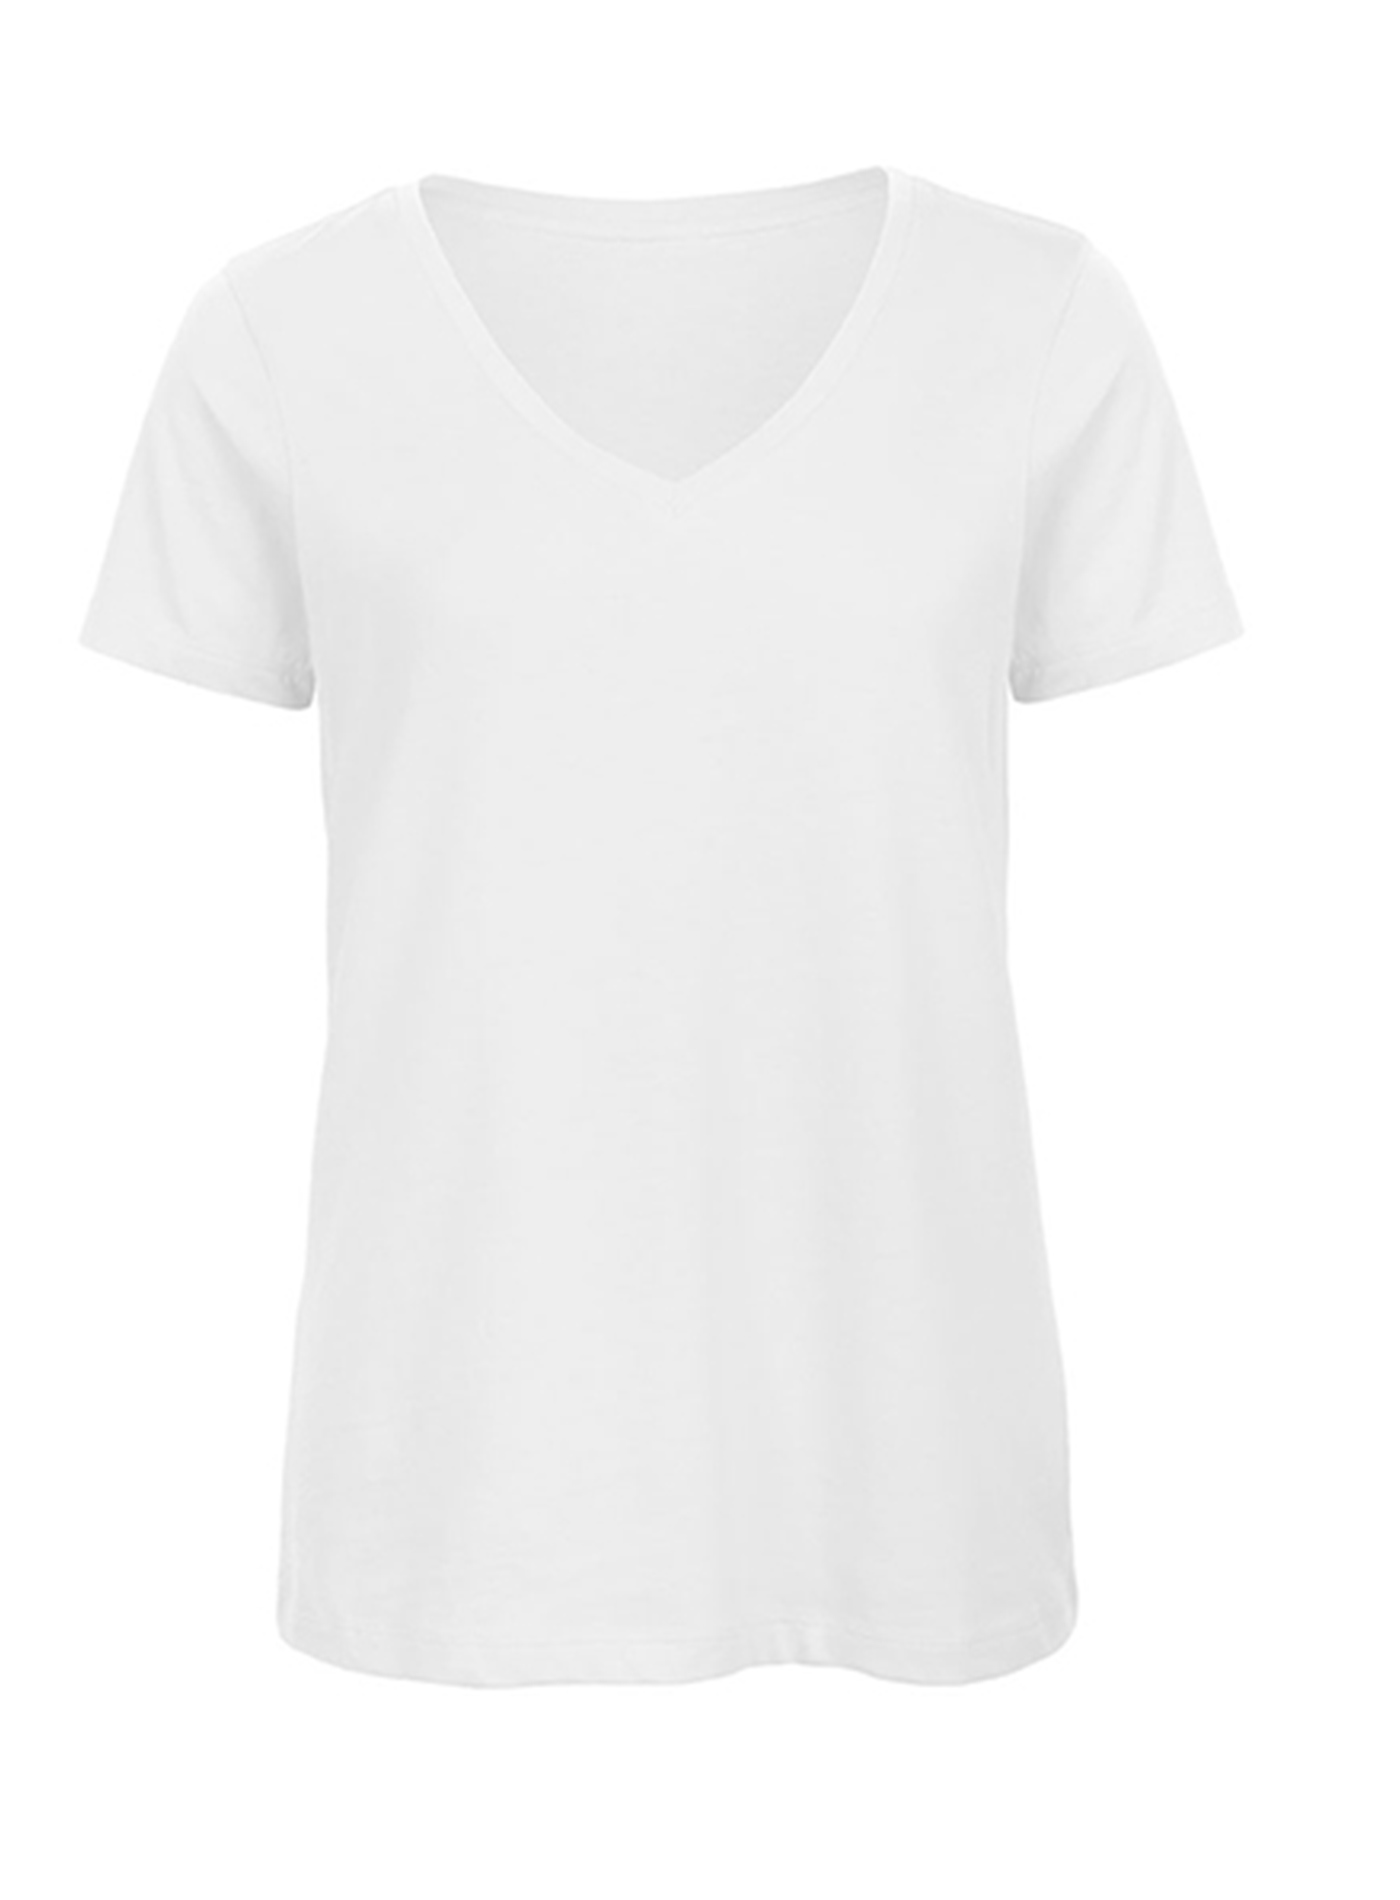 Dámské tričko s výstřihem do V B&C Collection Inspire - Bílá XXL